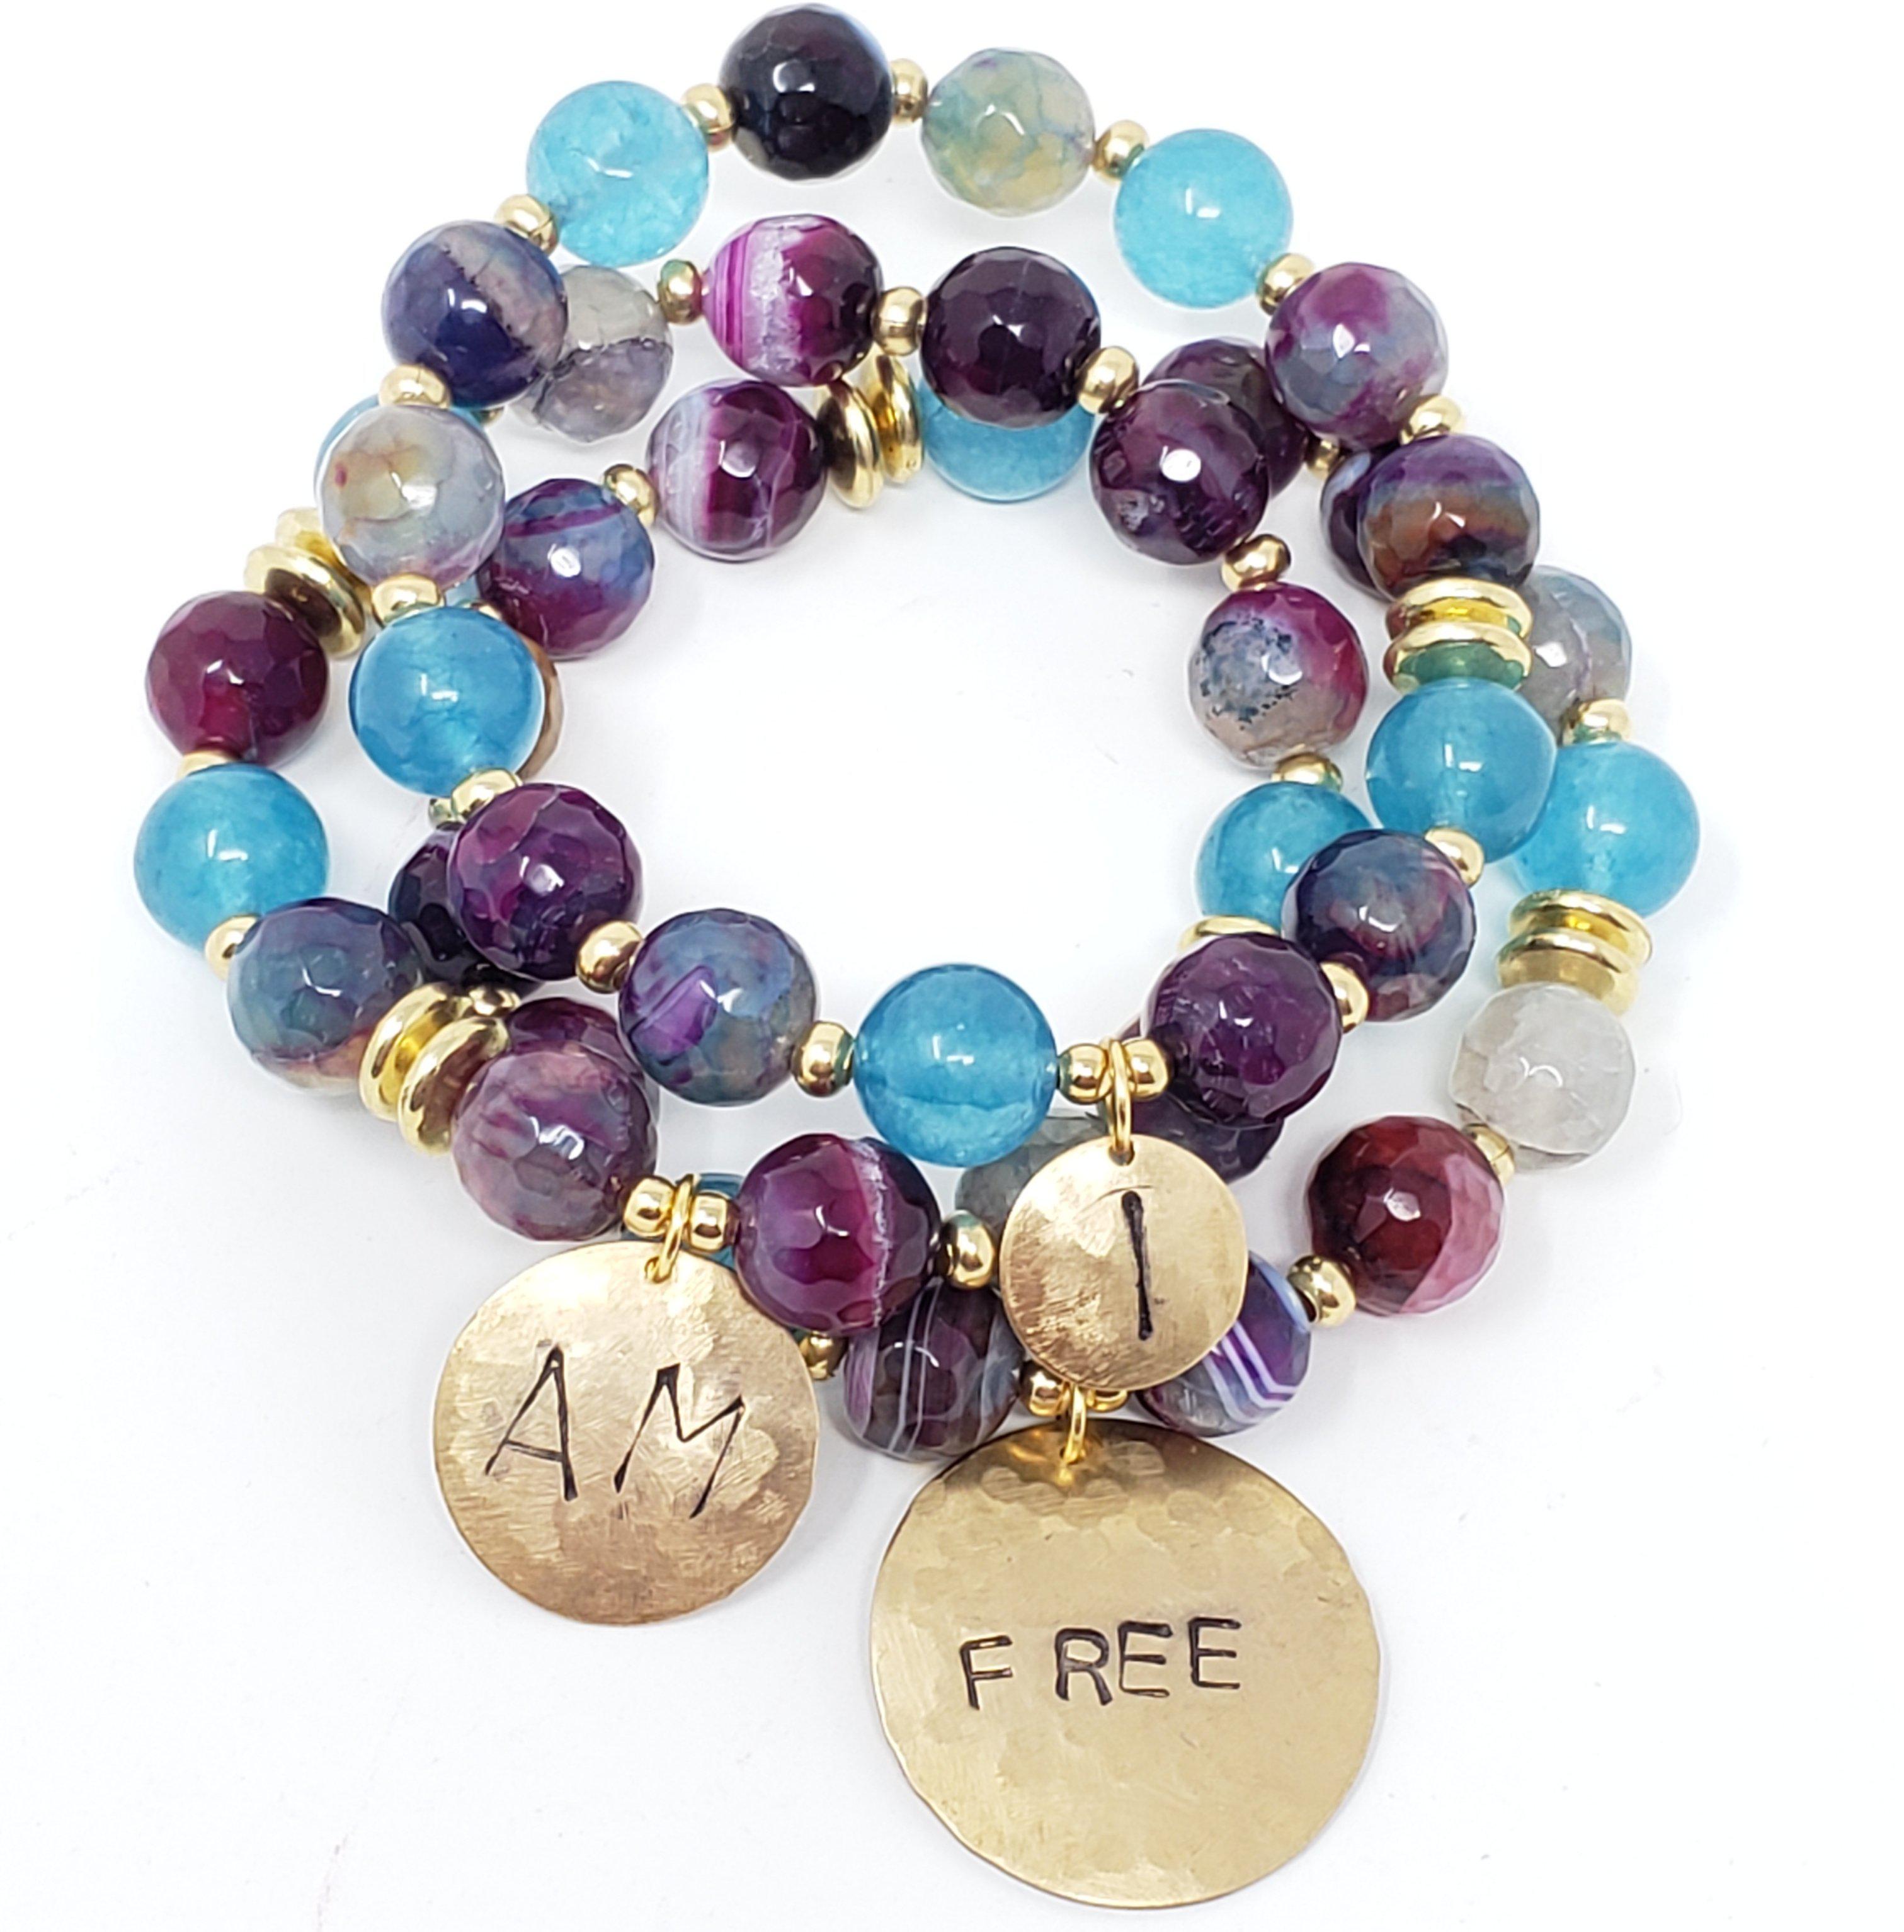 "I Am Free" Affirmation Bracelets